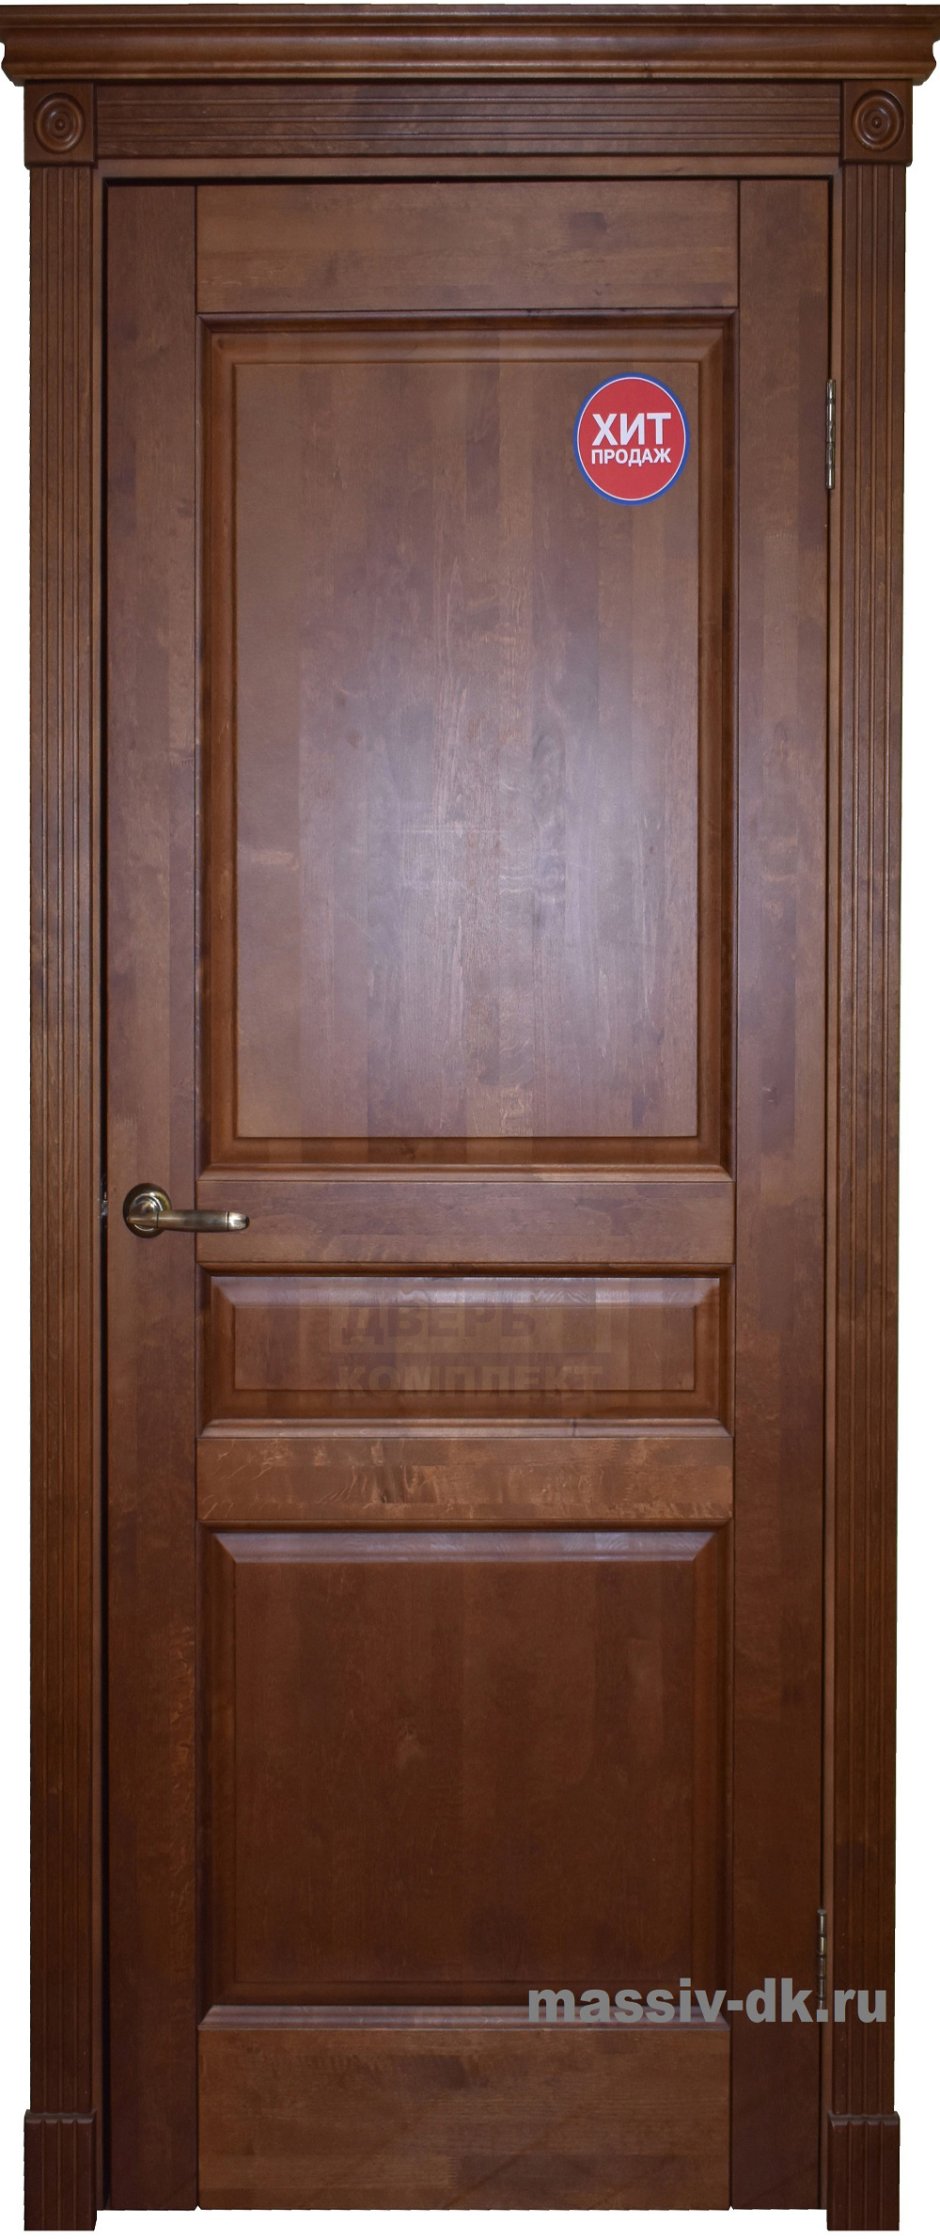 Дверное полотно филенчатое "Форест Прима"